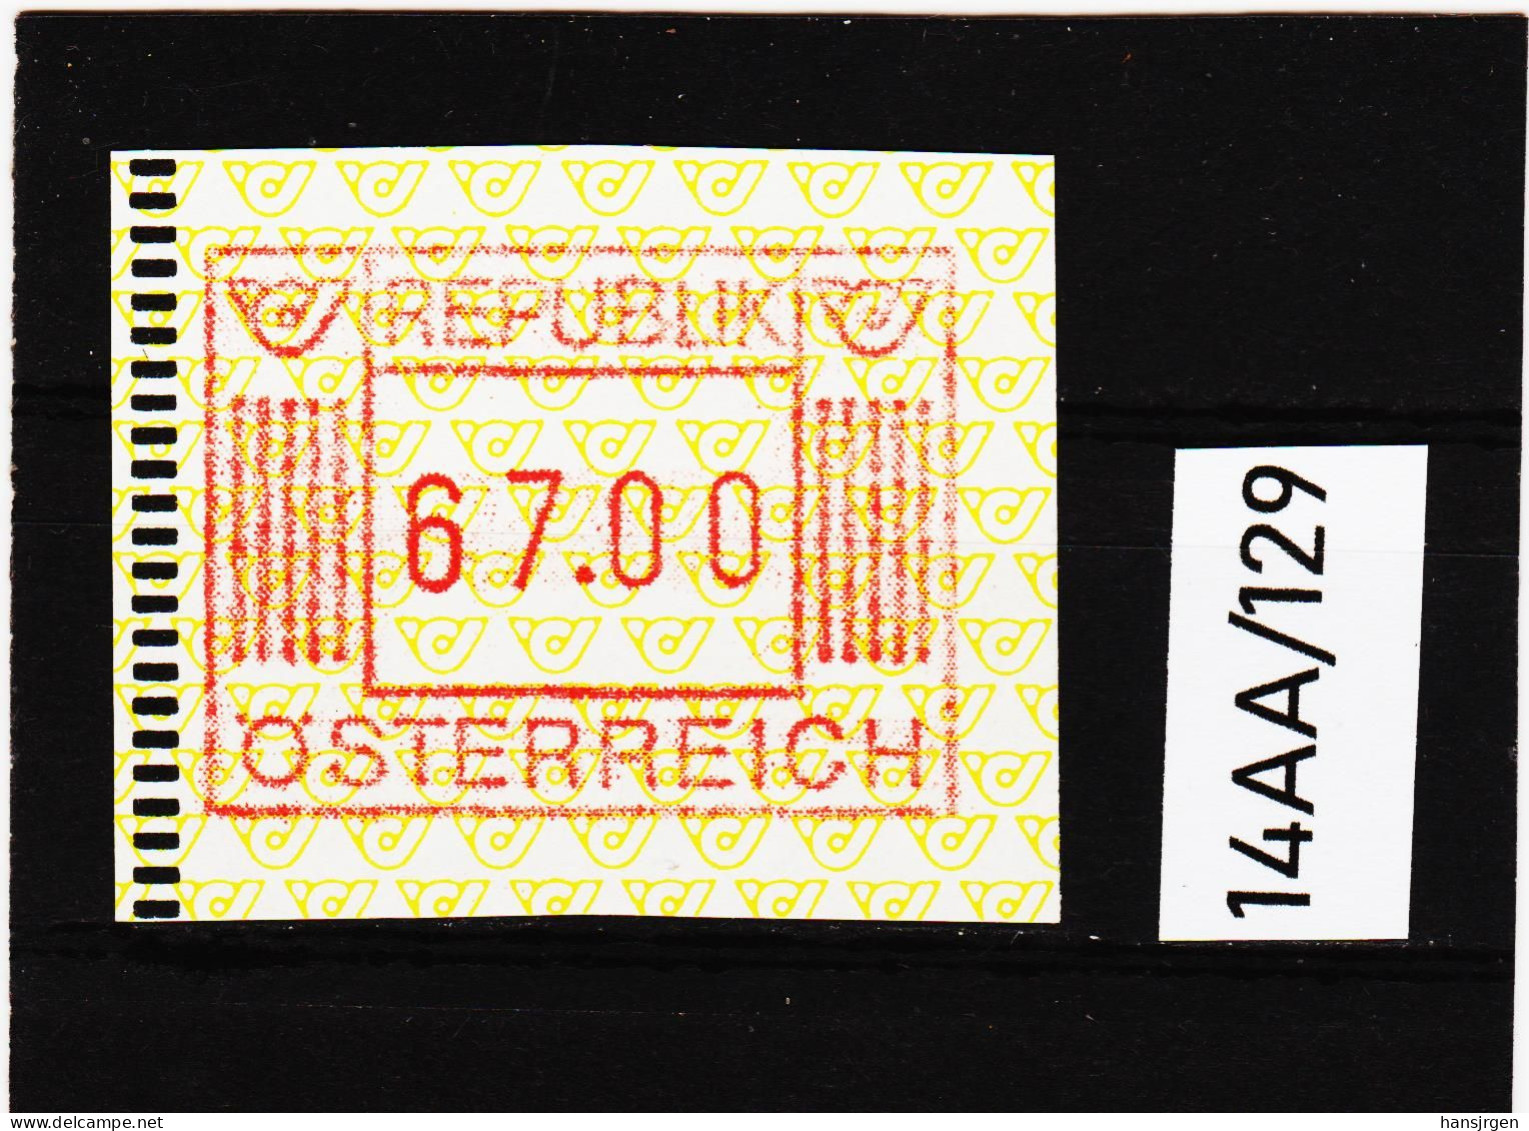 14AA/129  ÖSTERREICH 1983 AUTOMATENMARKEN  A N K  1. AUSGABE  67,00 SCHILLING   ** Postfrisch - Automatenmarken [ATM]